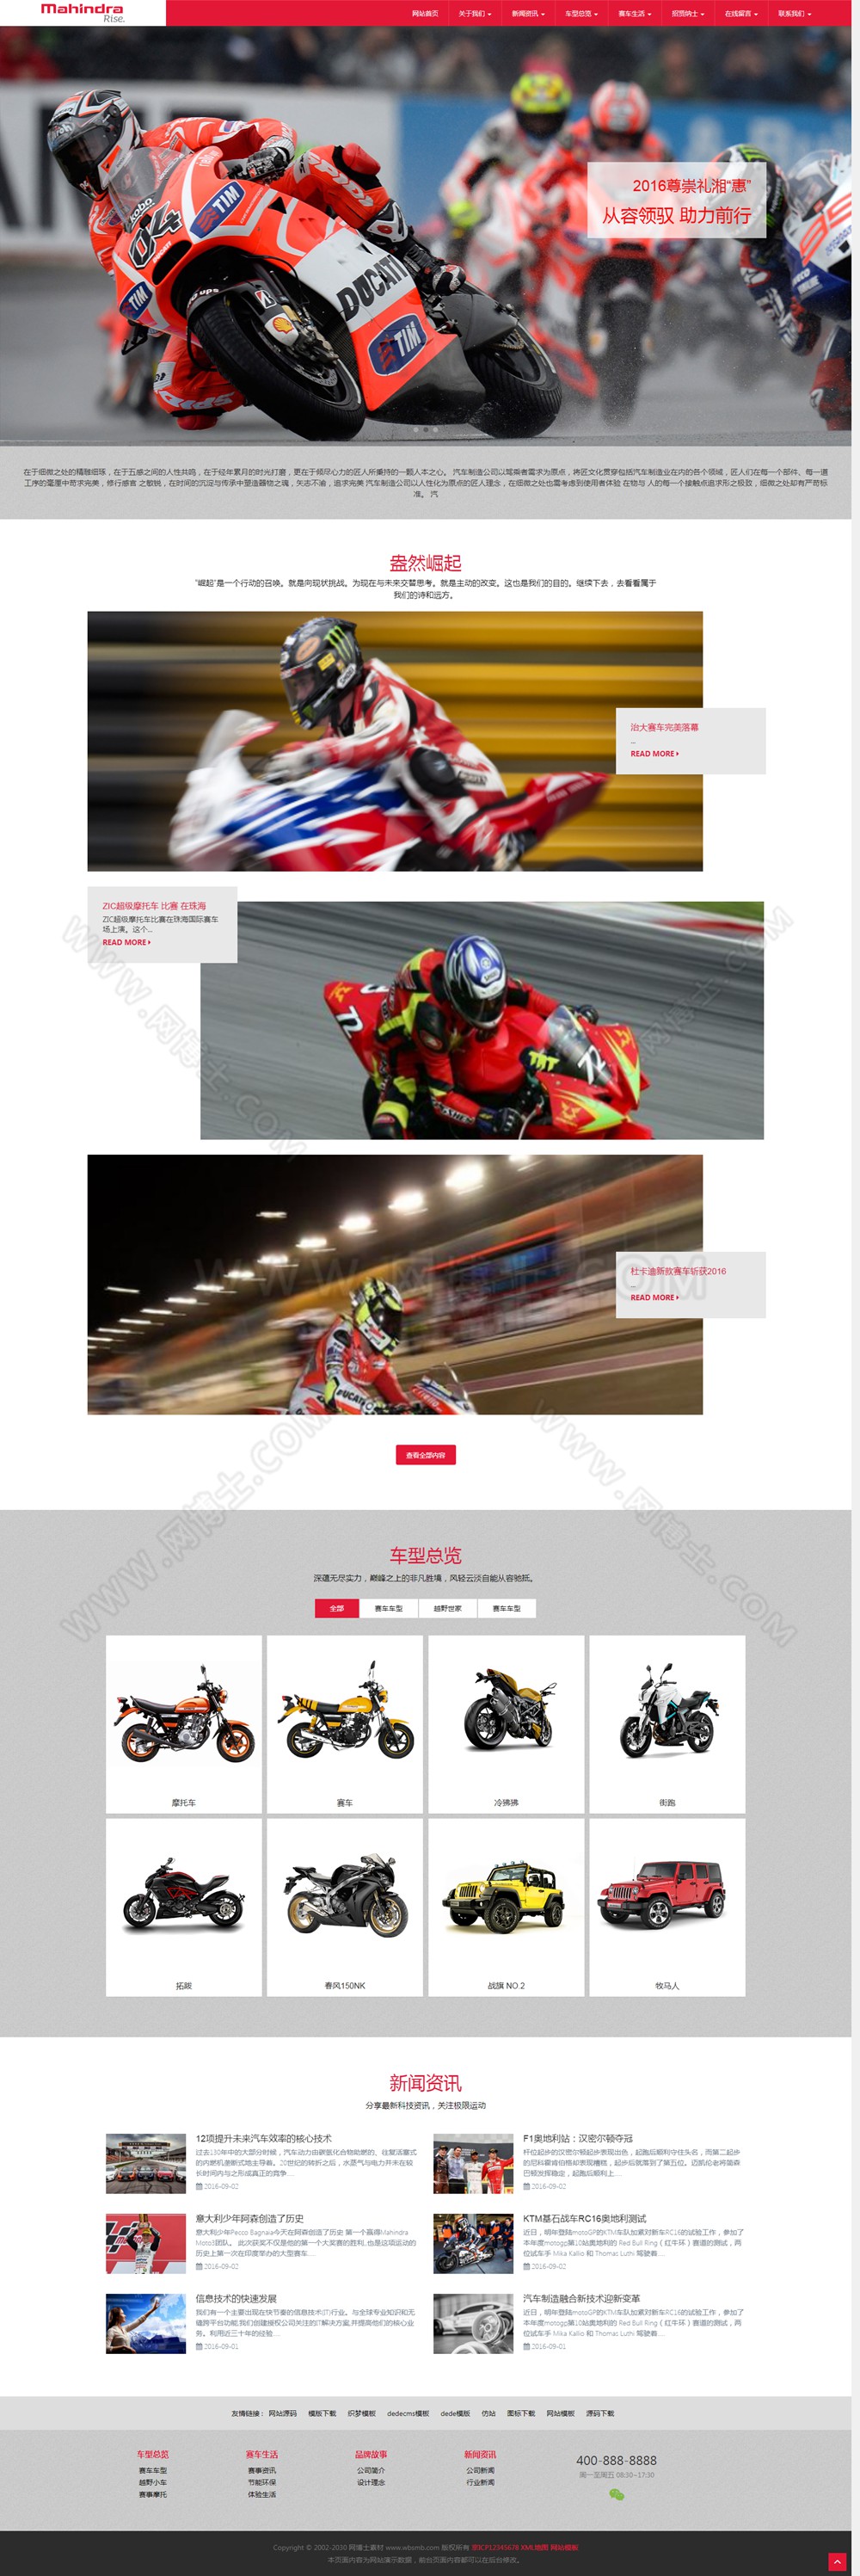 (自适应手机版)dedecms响应式汽车制造公司网站模板 HTML5大气高端红色摩托车网站